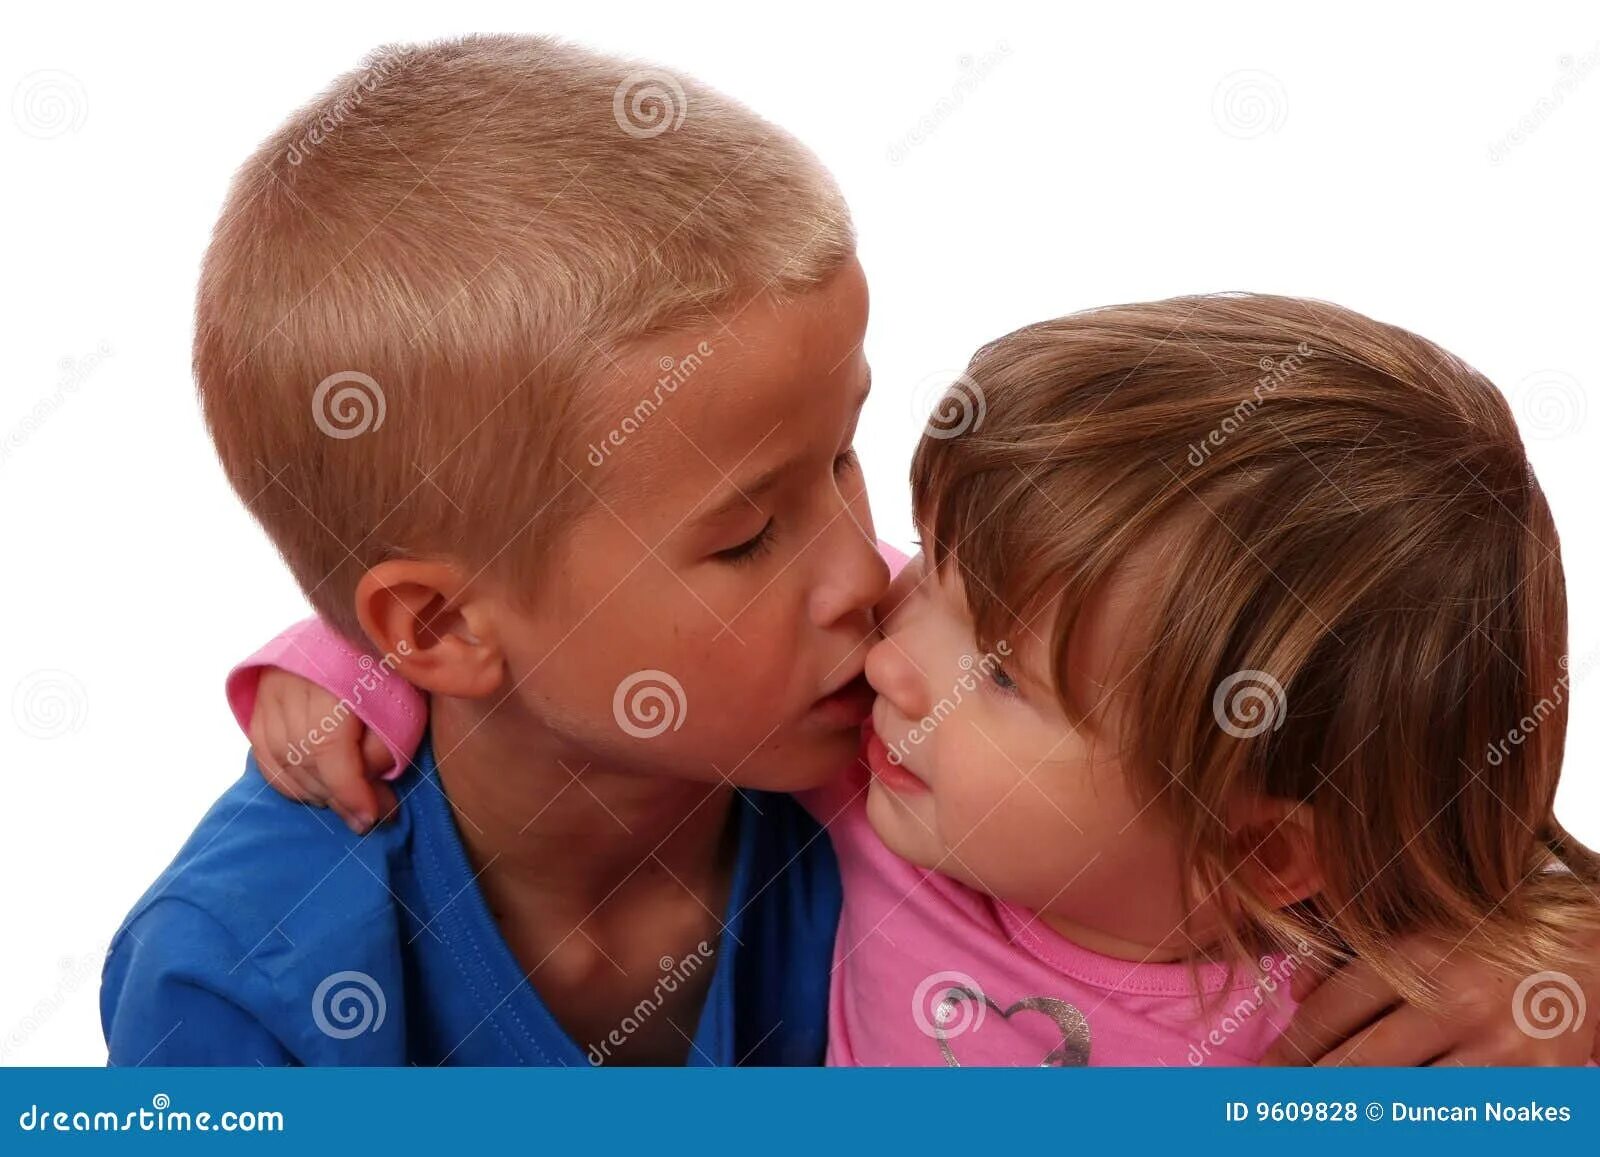 Старший брат целует младшего. Мальчик целует брата. Сосание девочки мальчиком. Дети отсасывают друг другу. Просит брата отсосать